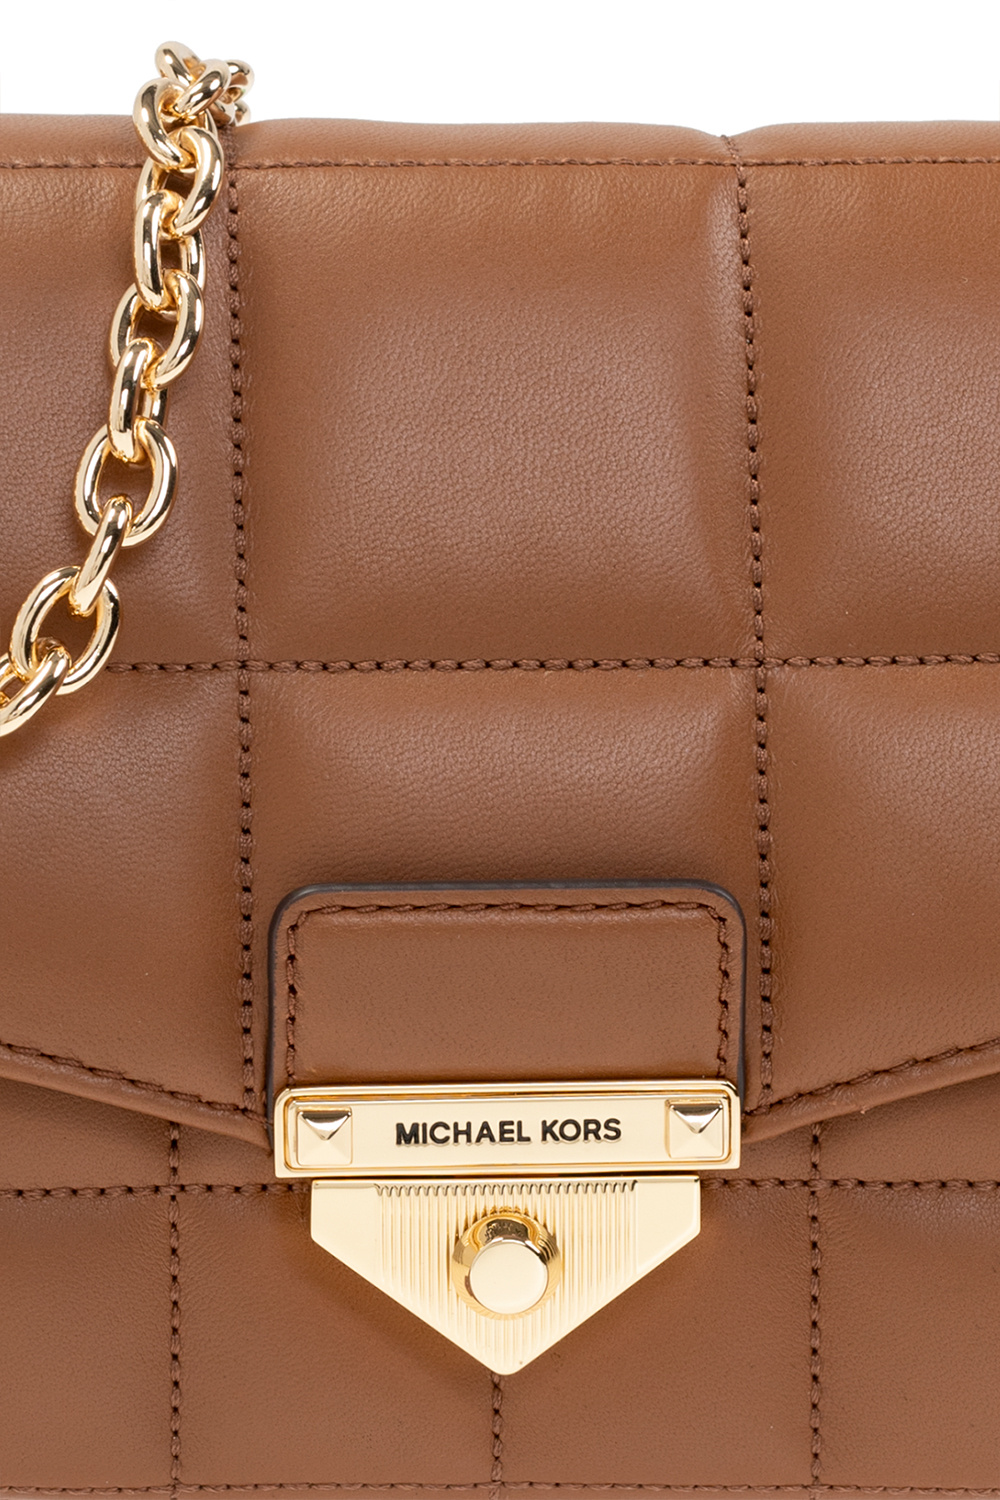 Michael kors charlotte top zip tote brown mk signature  luggage zip wallet   Fruugo NZ